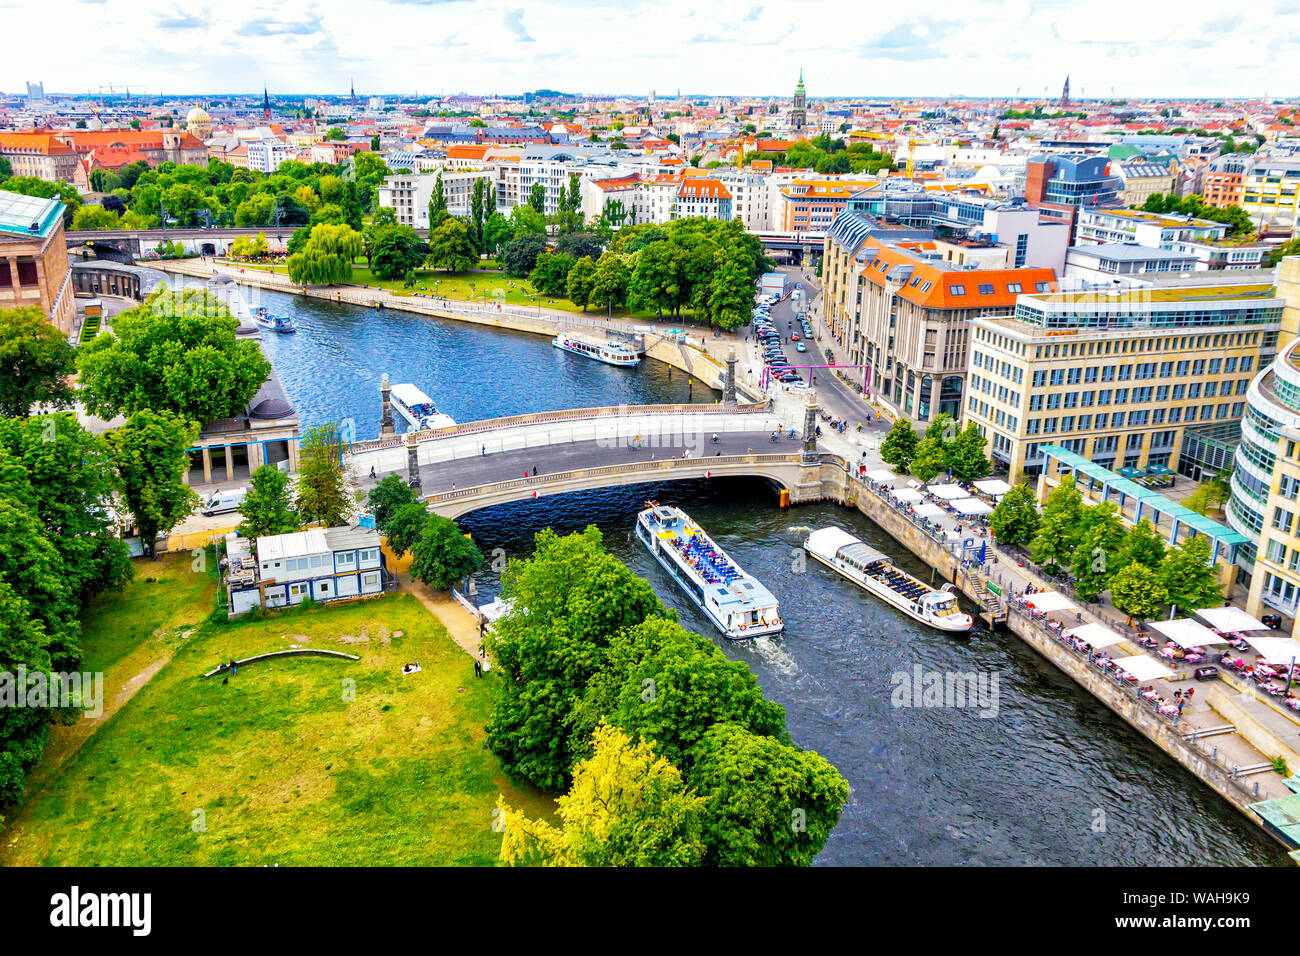 Skyline Luftbild von Spree und der Museumsinsel in Berlin, Deutschland. Berlin touristische tour Boote auf dem Fluss. Blick vom Berliner Dom Stockfoto